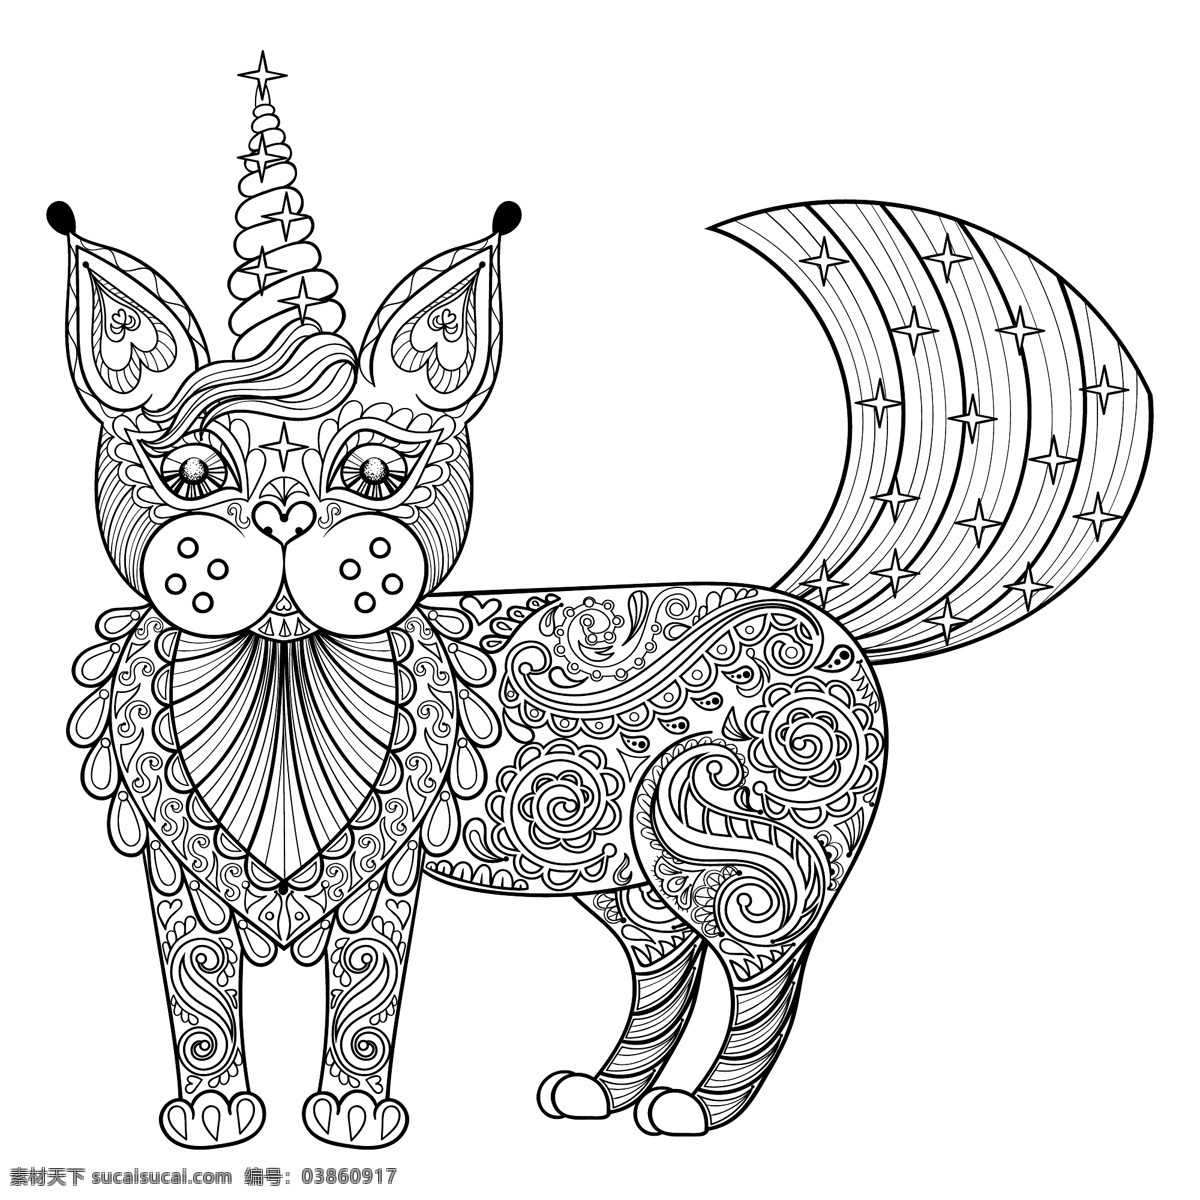 手绘 艺术 花纹 猫咪 插画 动物 卡通 创意